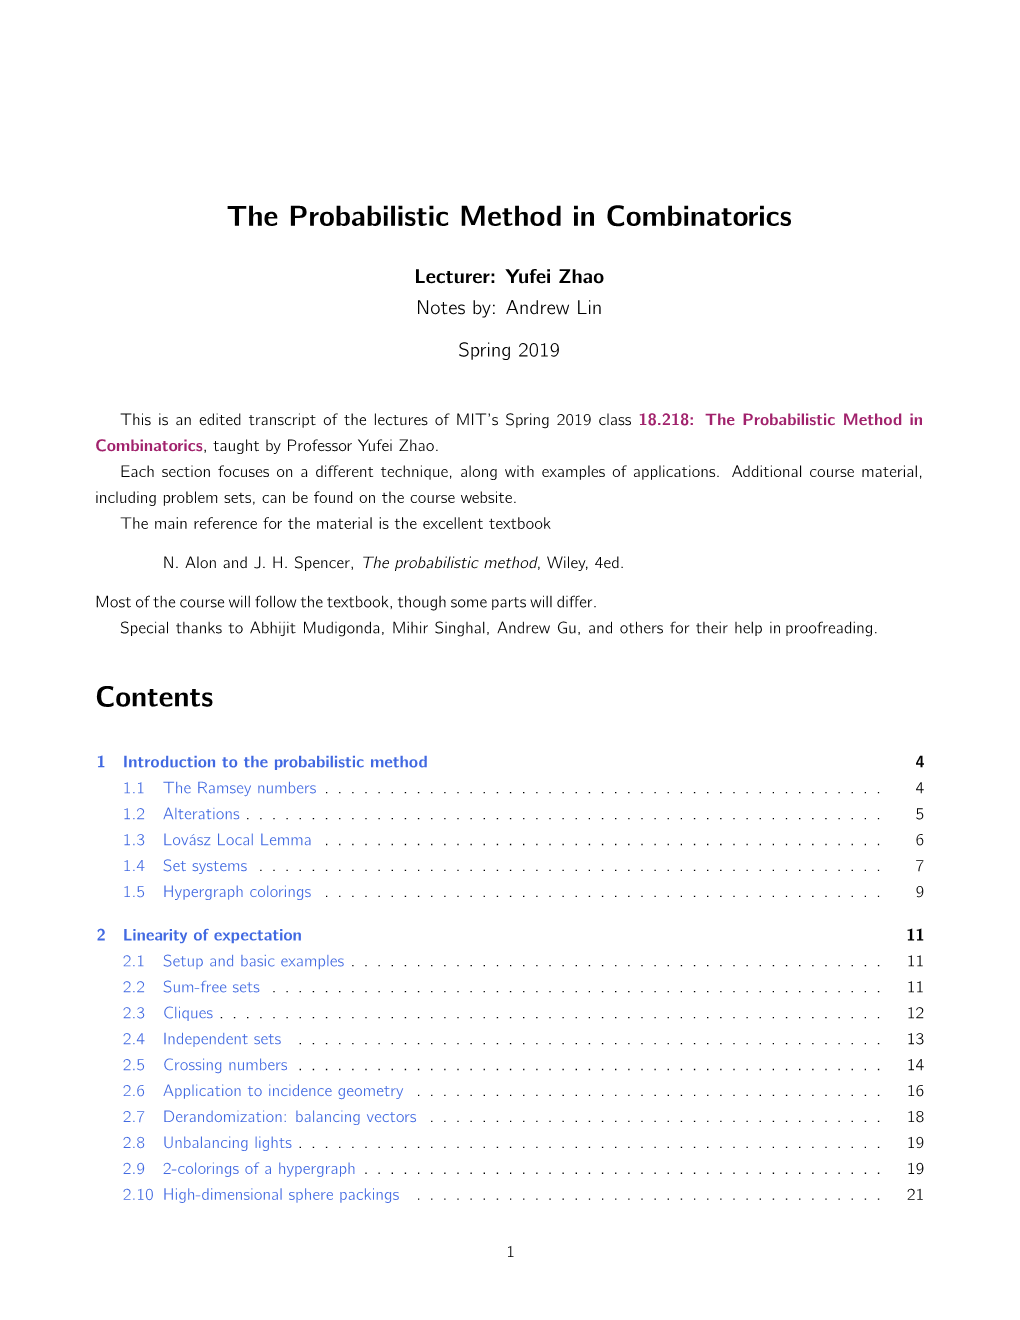 18.218 Probabilistic Method in Combinatorics, Lecture Notes